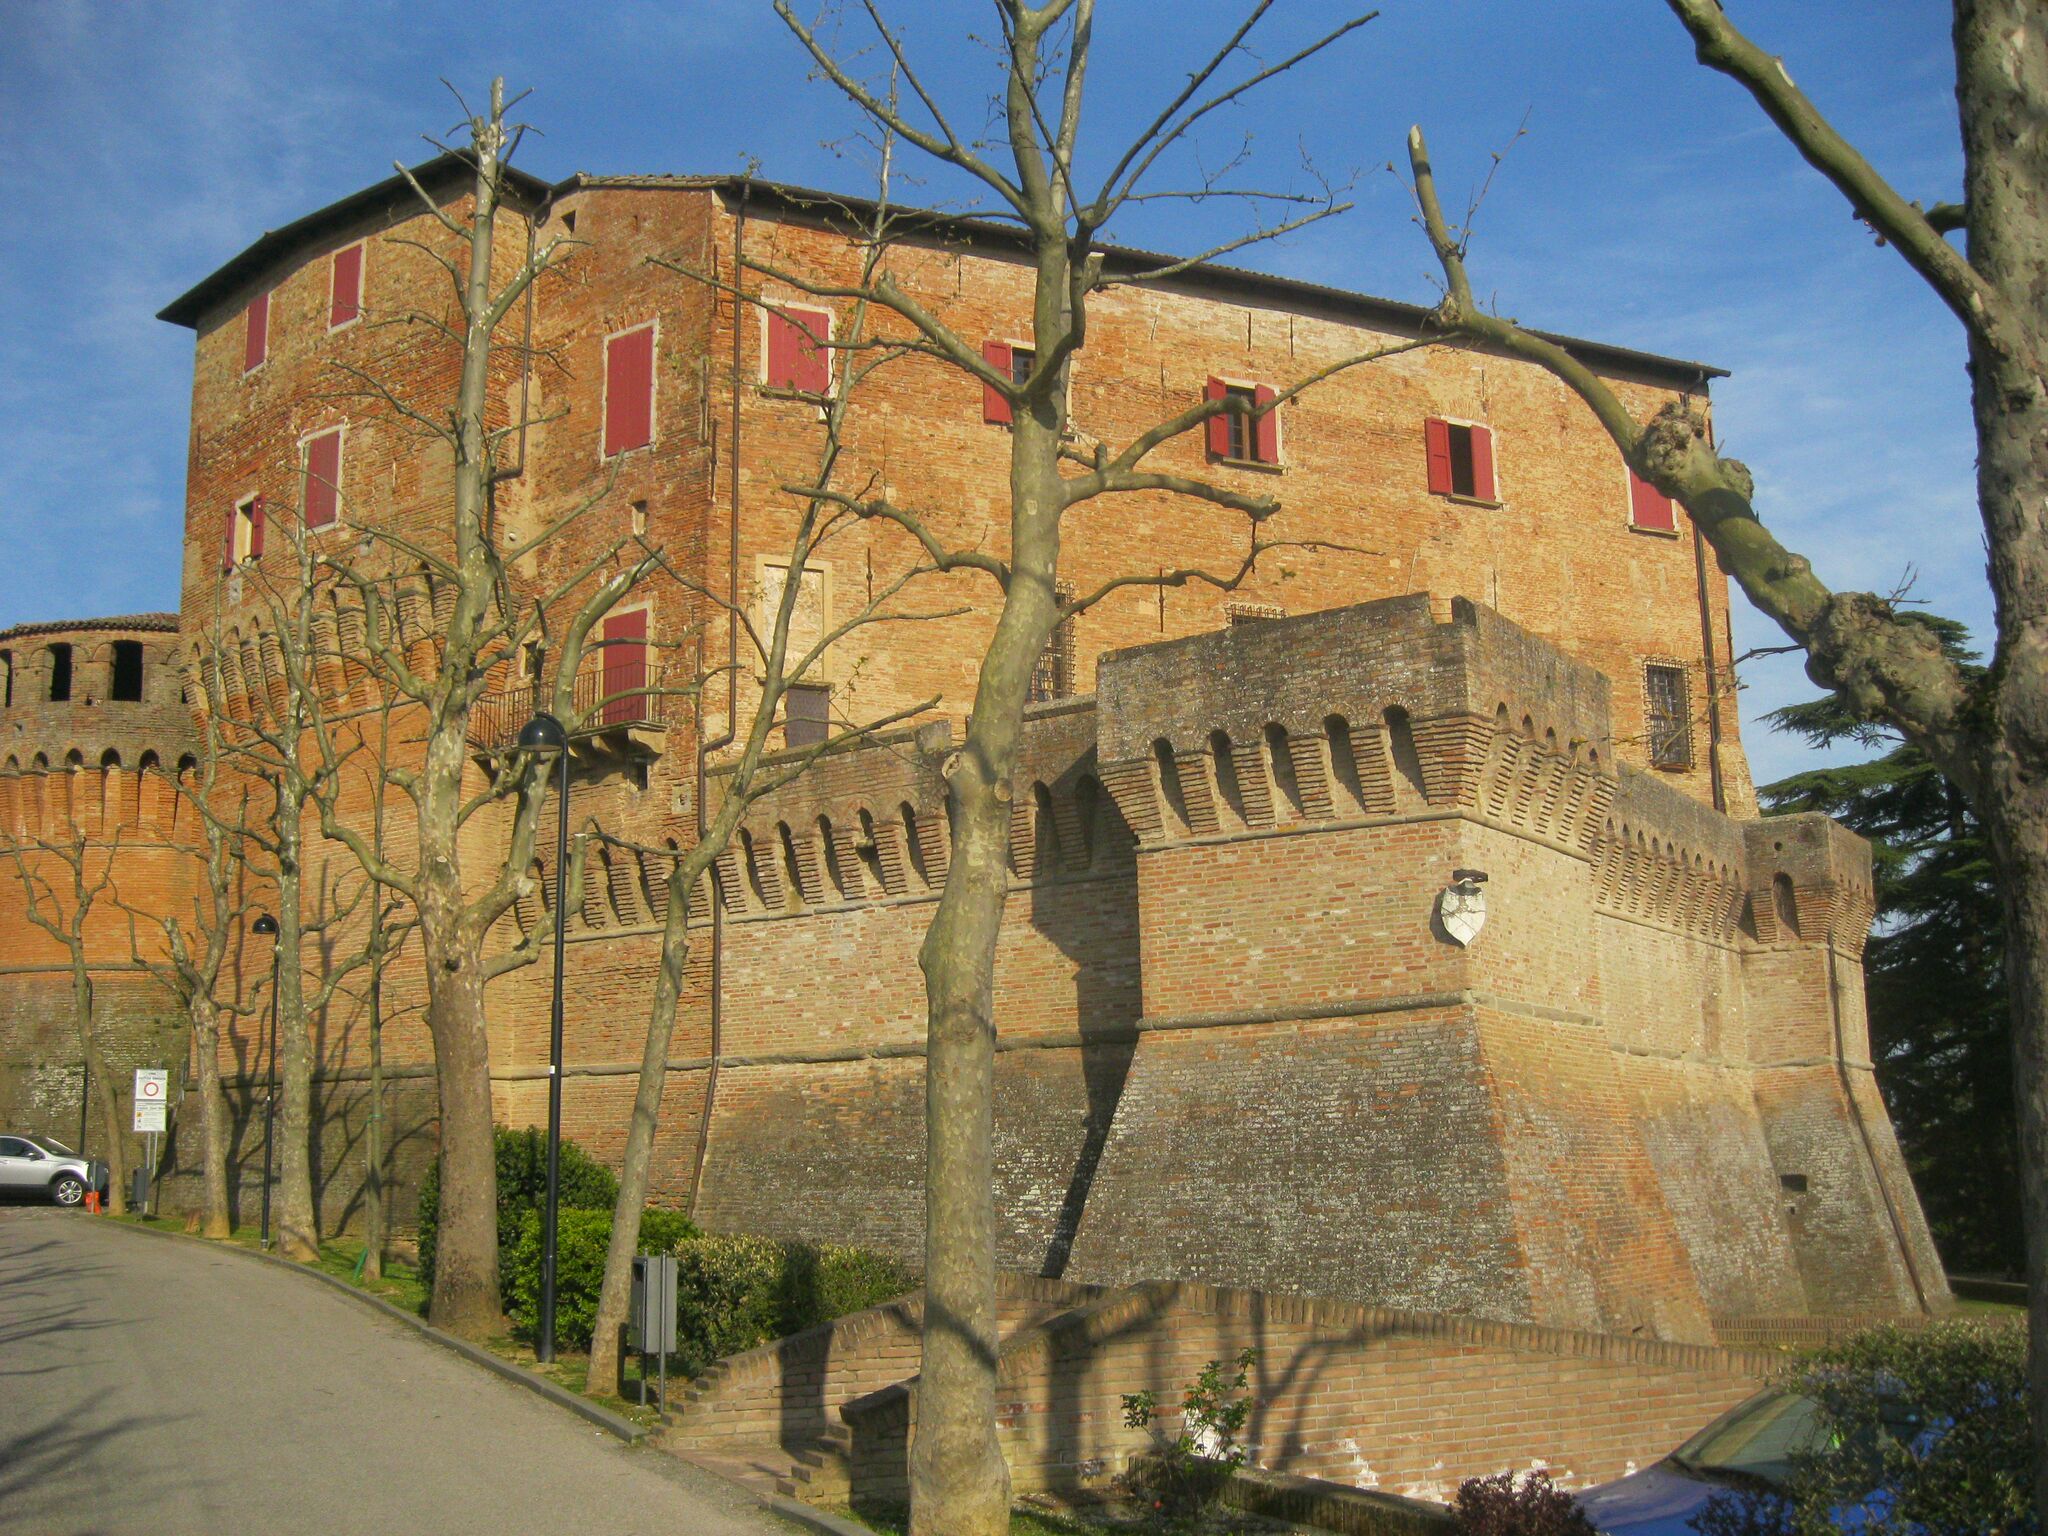 Rocca Sforzesca